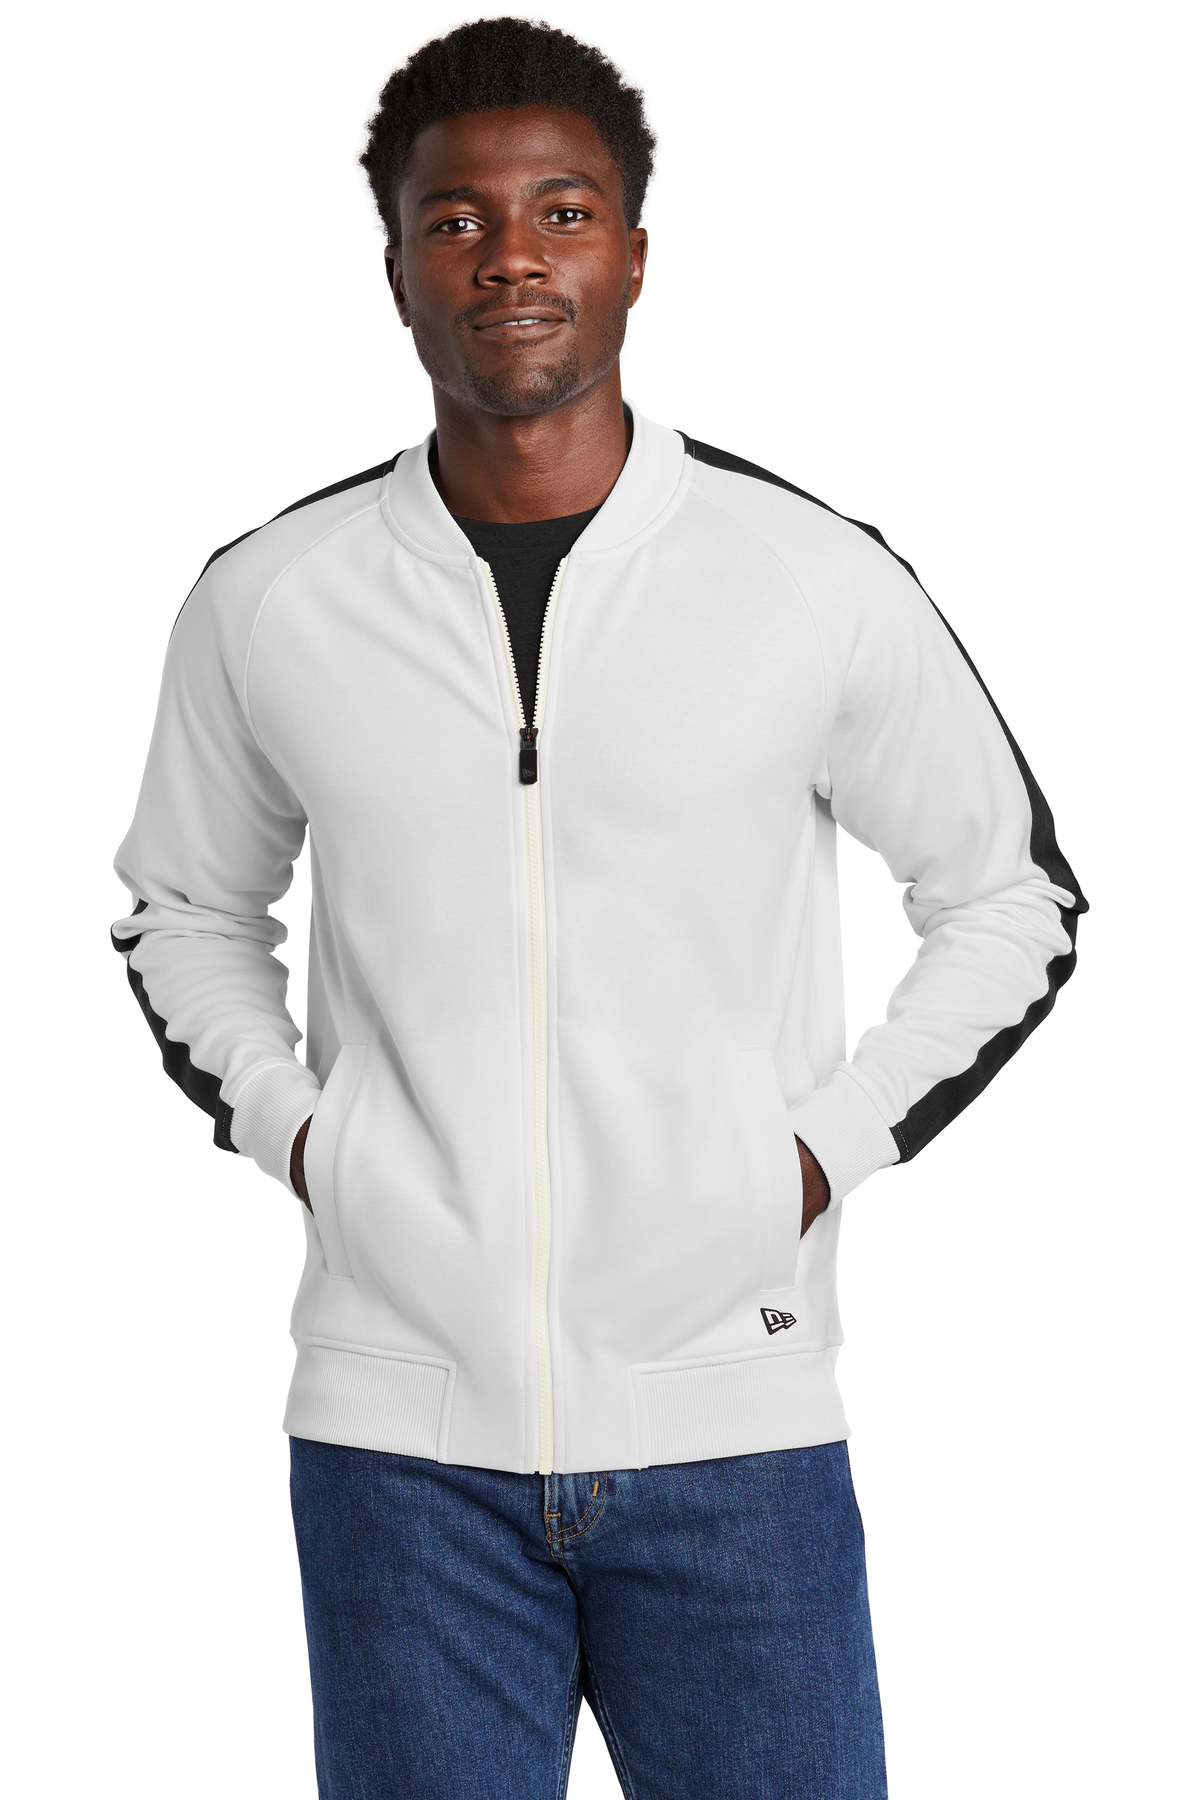 New Era Embroidered Men's Track Jacket | Activewear - Queensboro